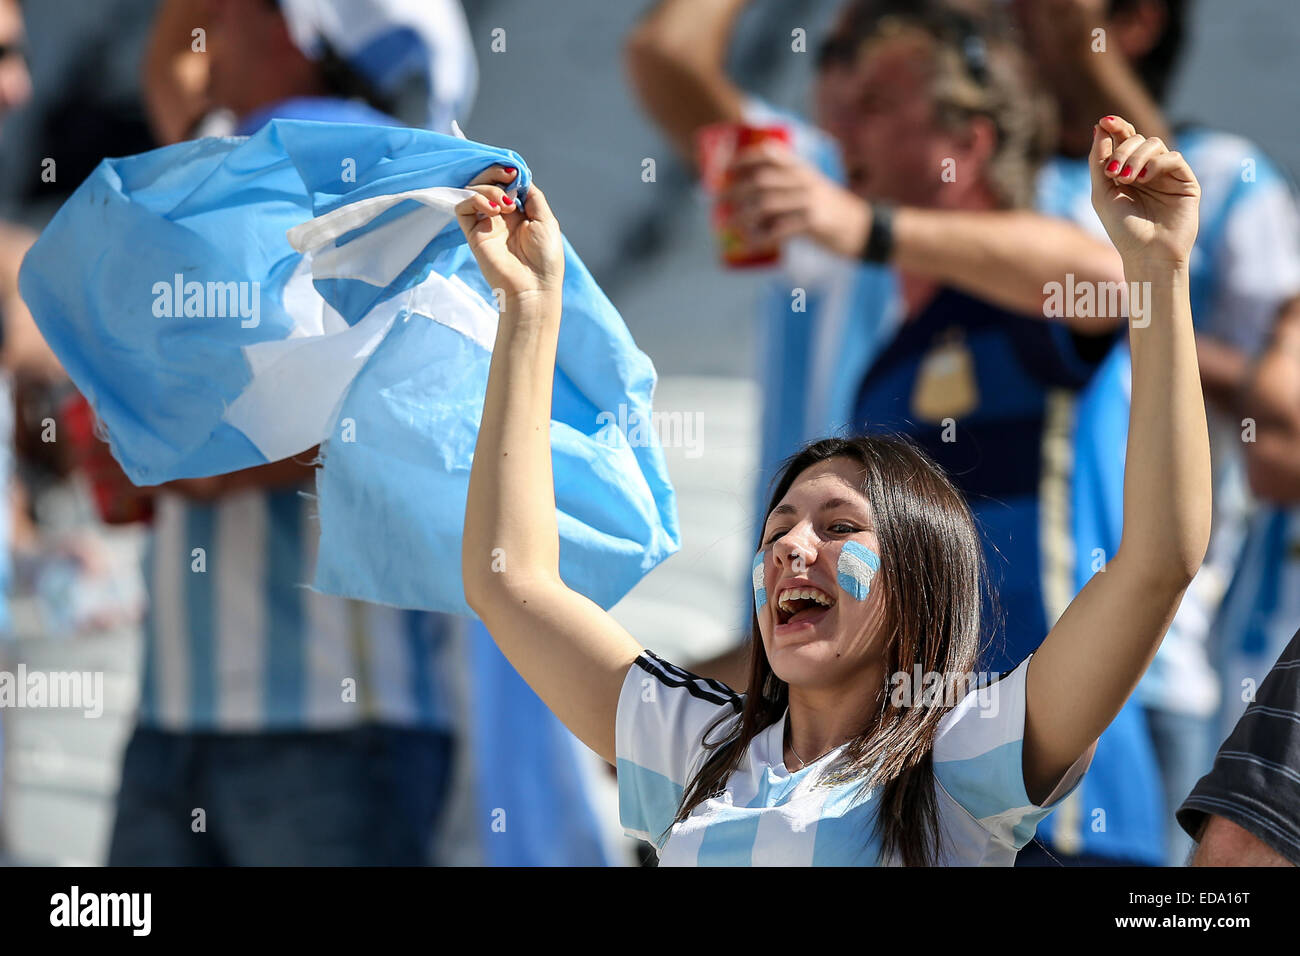 2014 FIFA World Cup - Runde 16 - Argentinien vs. Schweiz Spiel ausgetragen bei Arena Corinthians - Fans wo Argentinien: Sao Paulo, Brasilien bei: 1. Juli 2014 Stockfoto